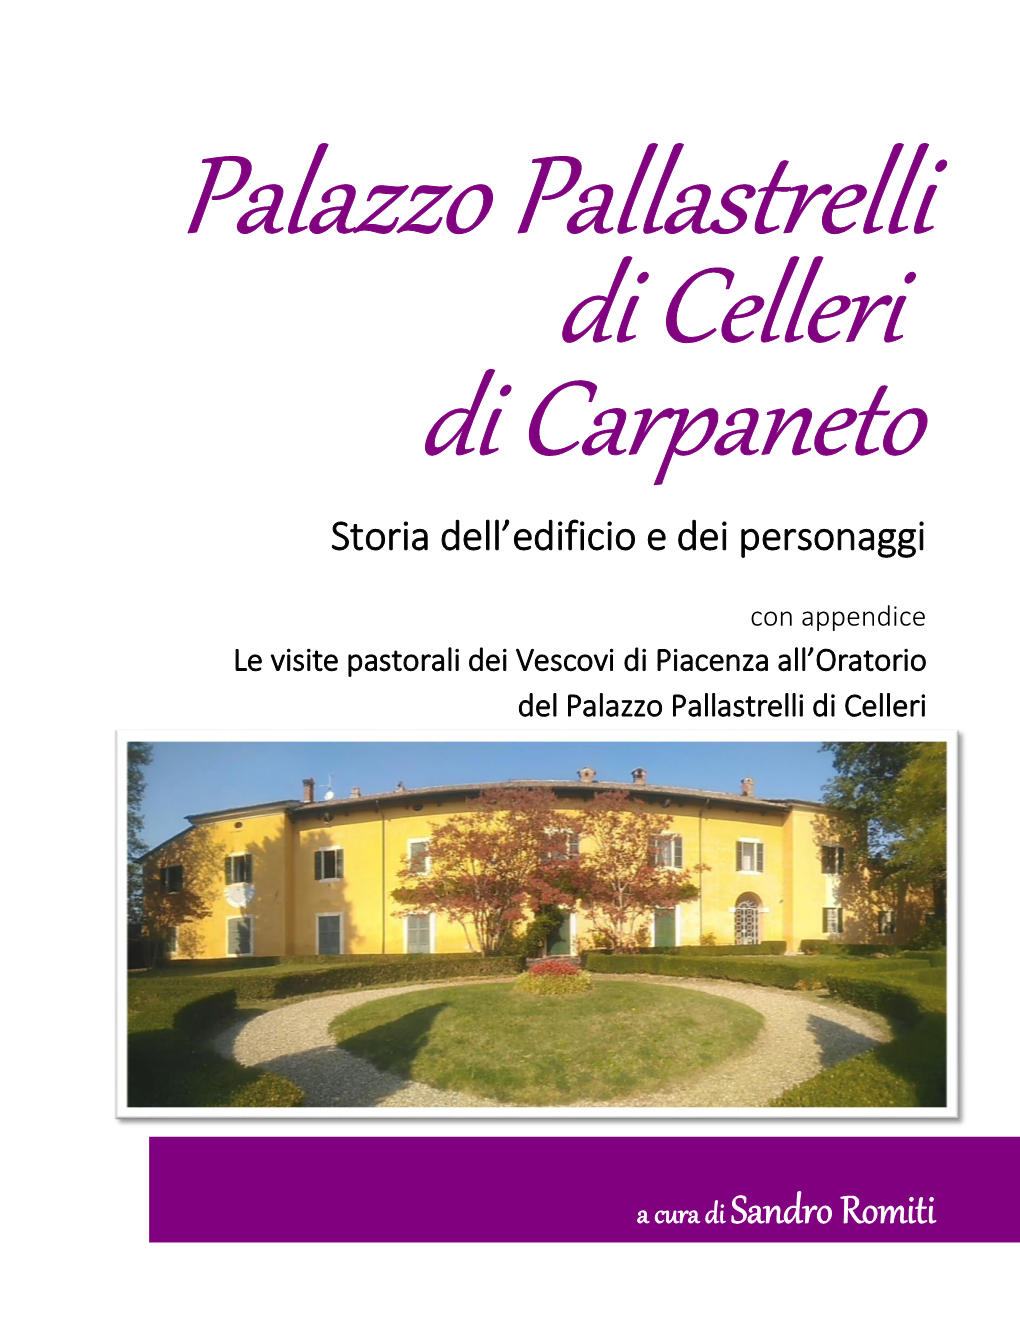 Palazzo Pallastrelli